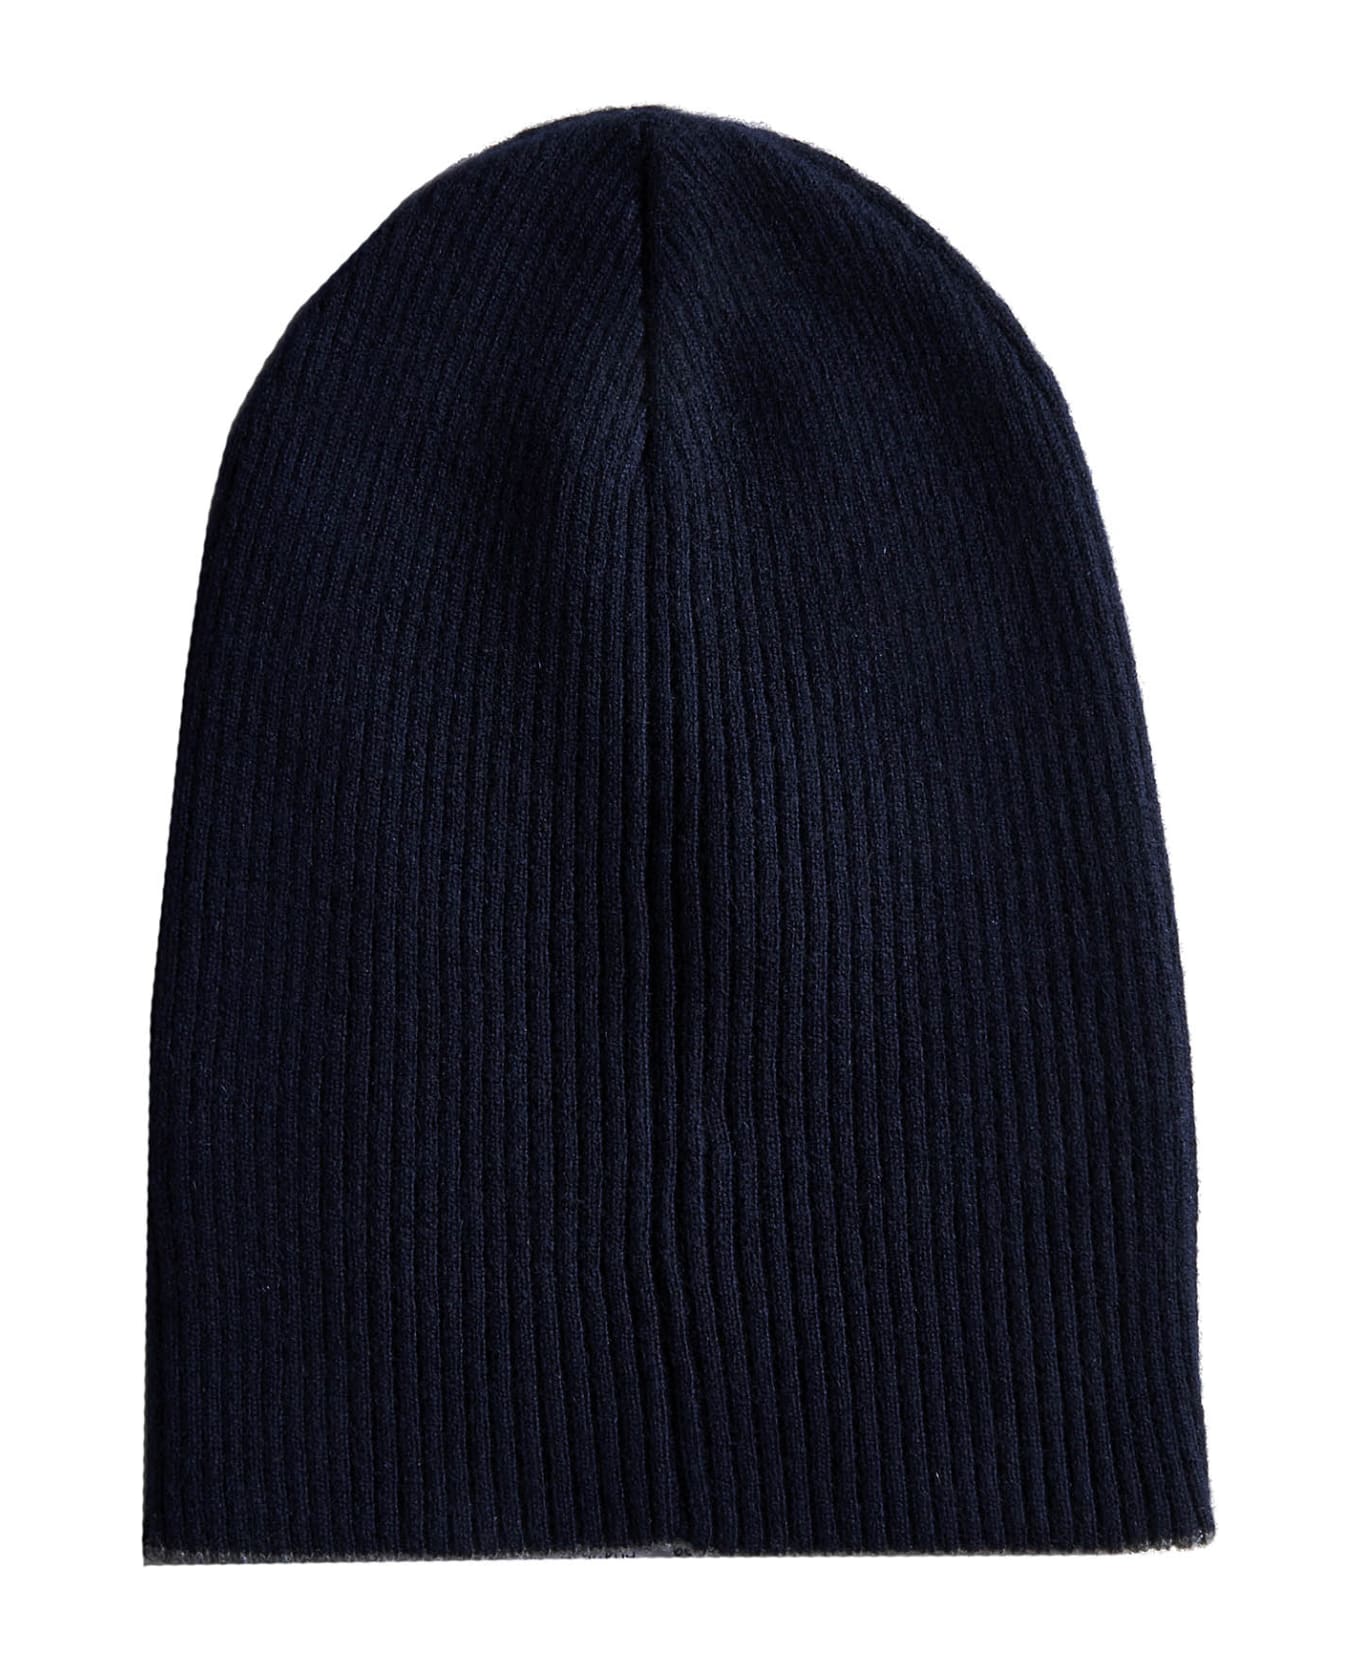 Brunello Cucinelli Cashmere Beanie Hat - Blue Navy 帽子